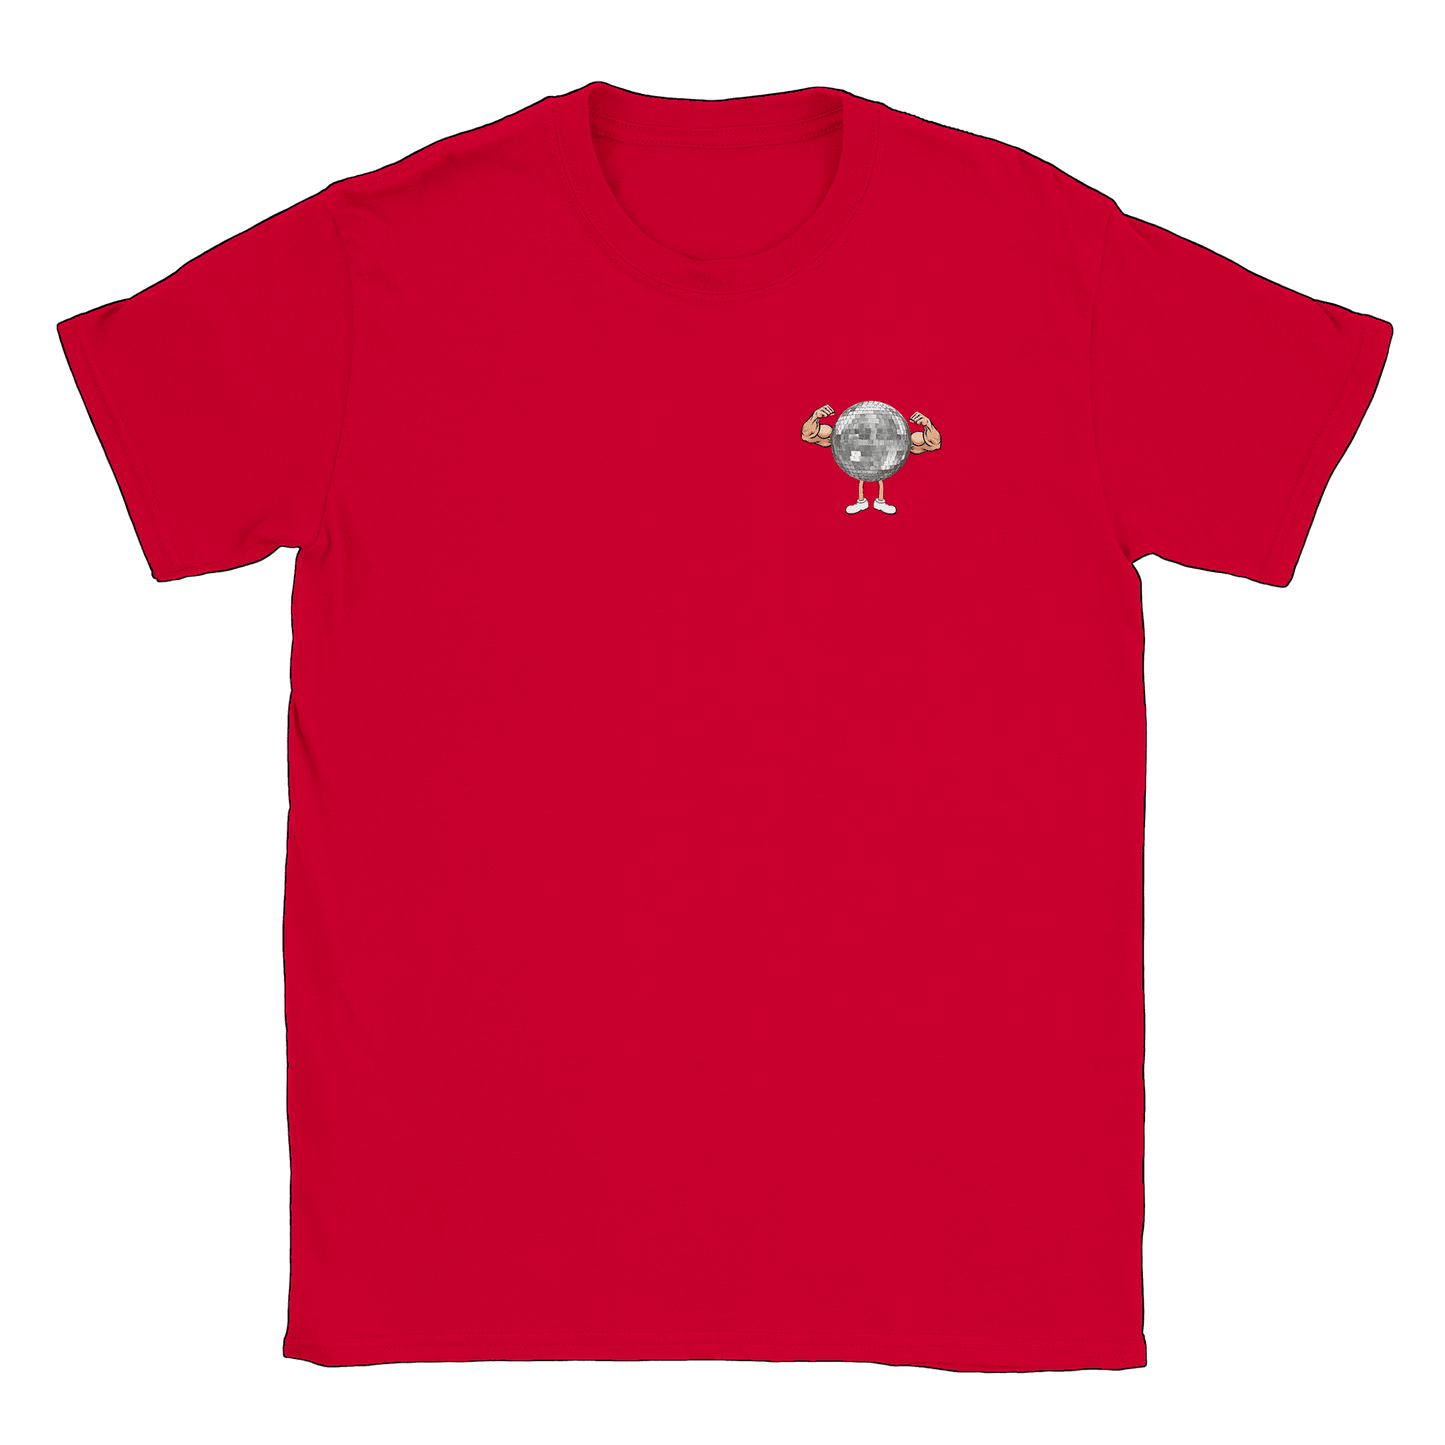 Den lille Discogymmaren - T-shirt Röd